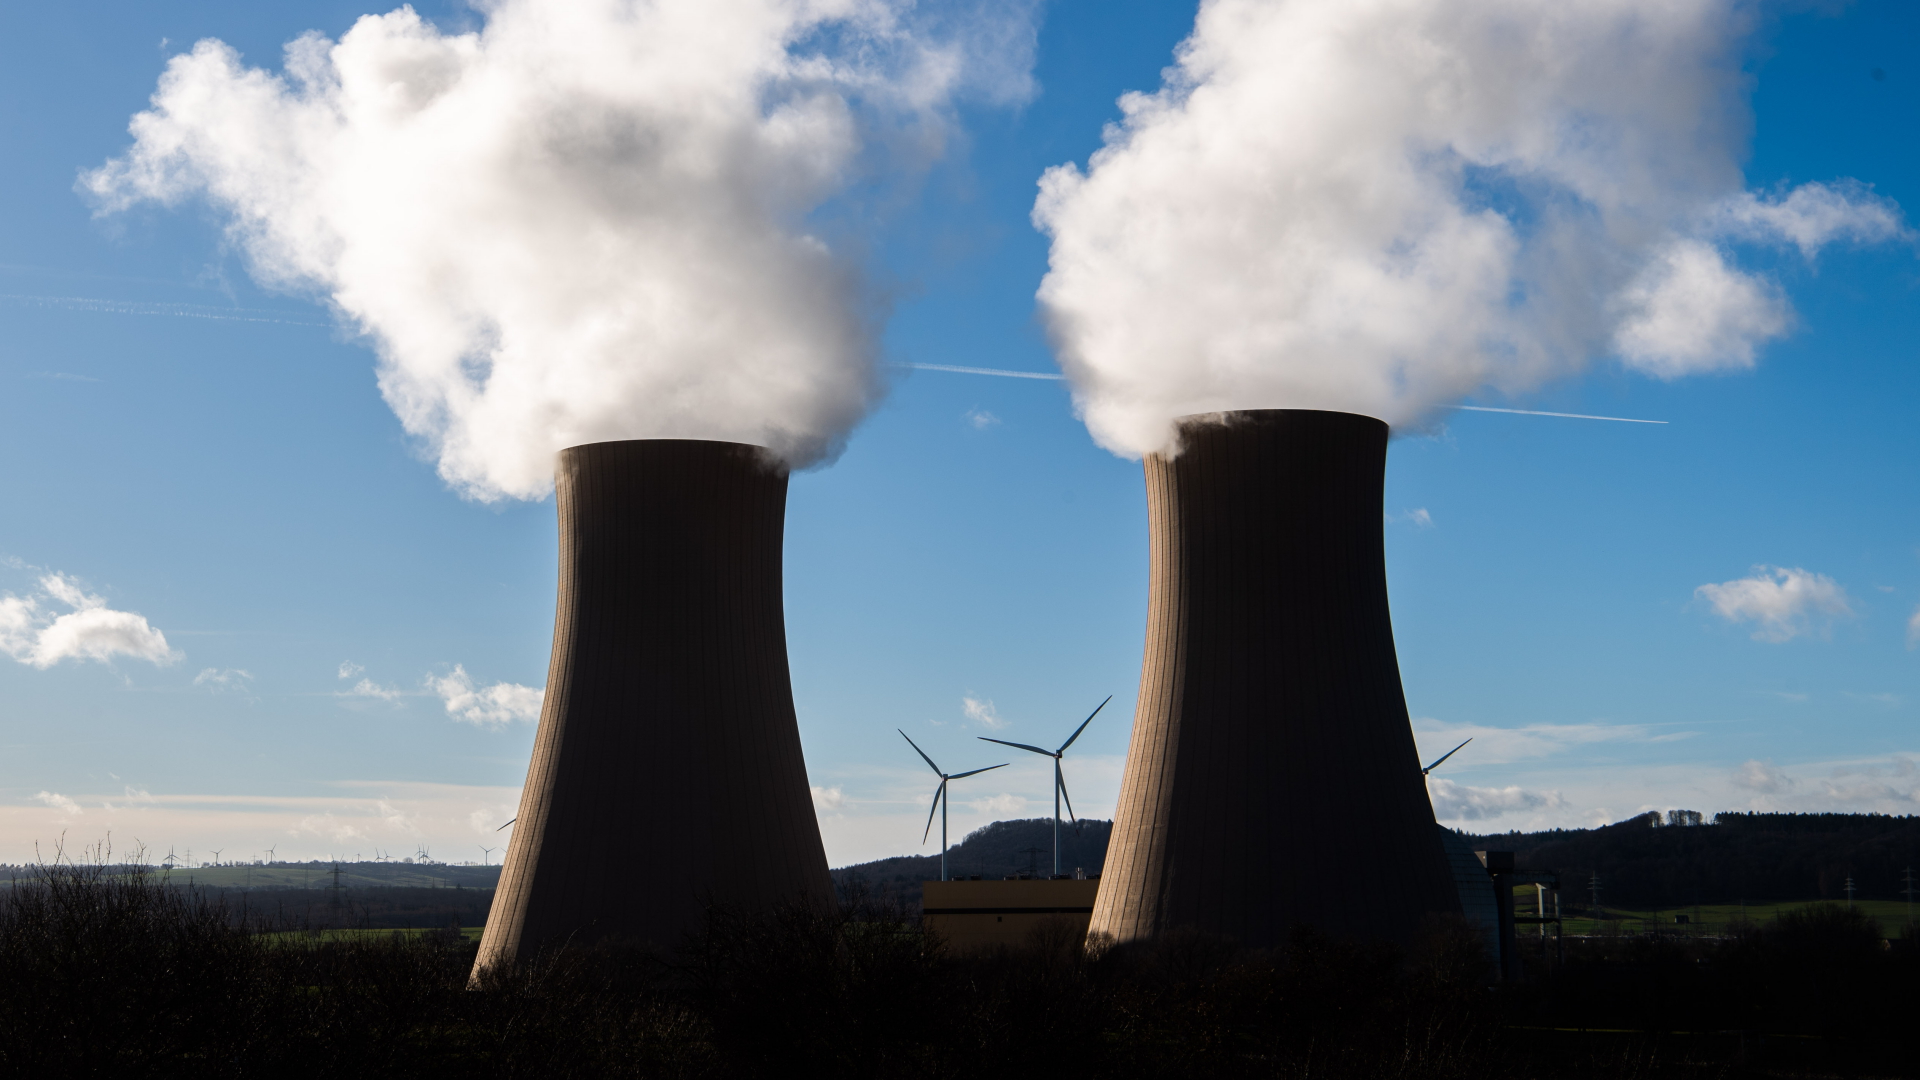 Dampf steigt aus den Kühltürmen des Atomkraftwerks Grohnde im Landkreis Hameln-Pyrmont auf, während im Hintergrund Windräder zu sehen sind | dpa